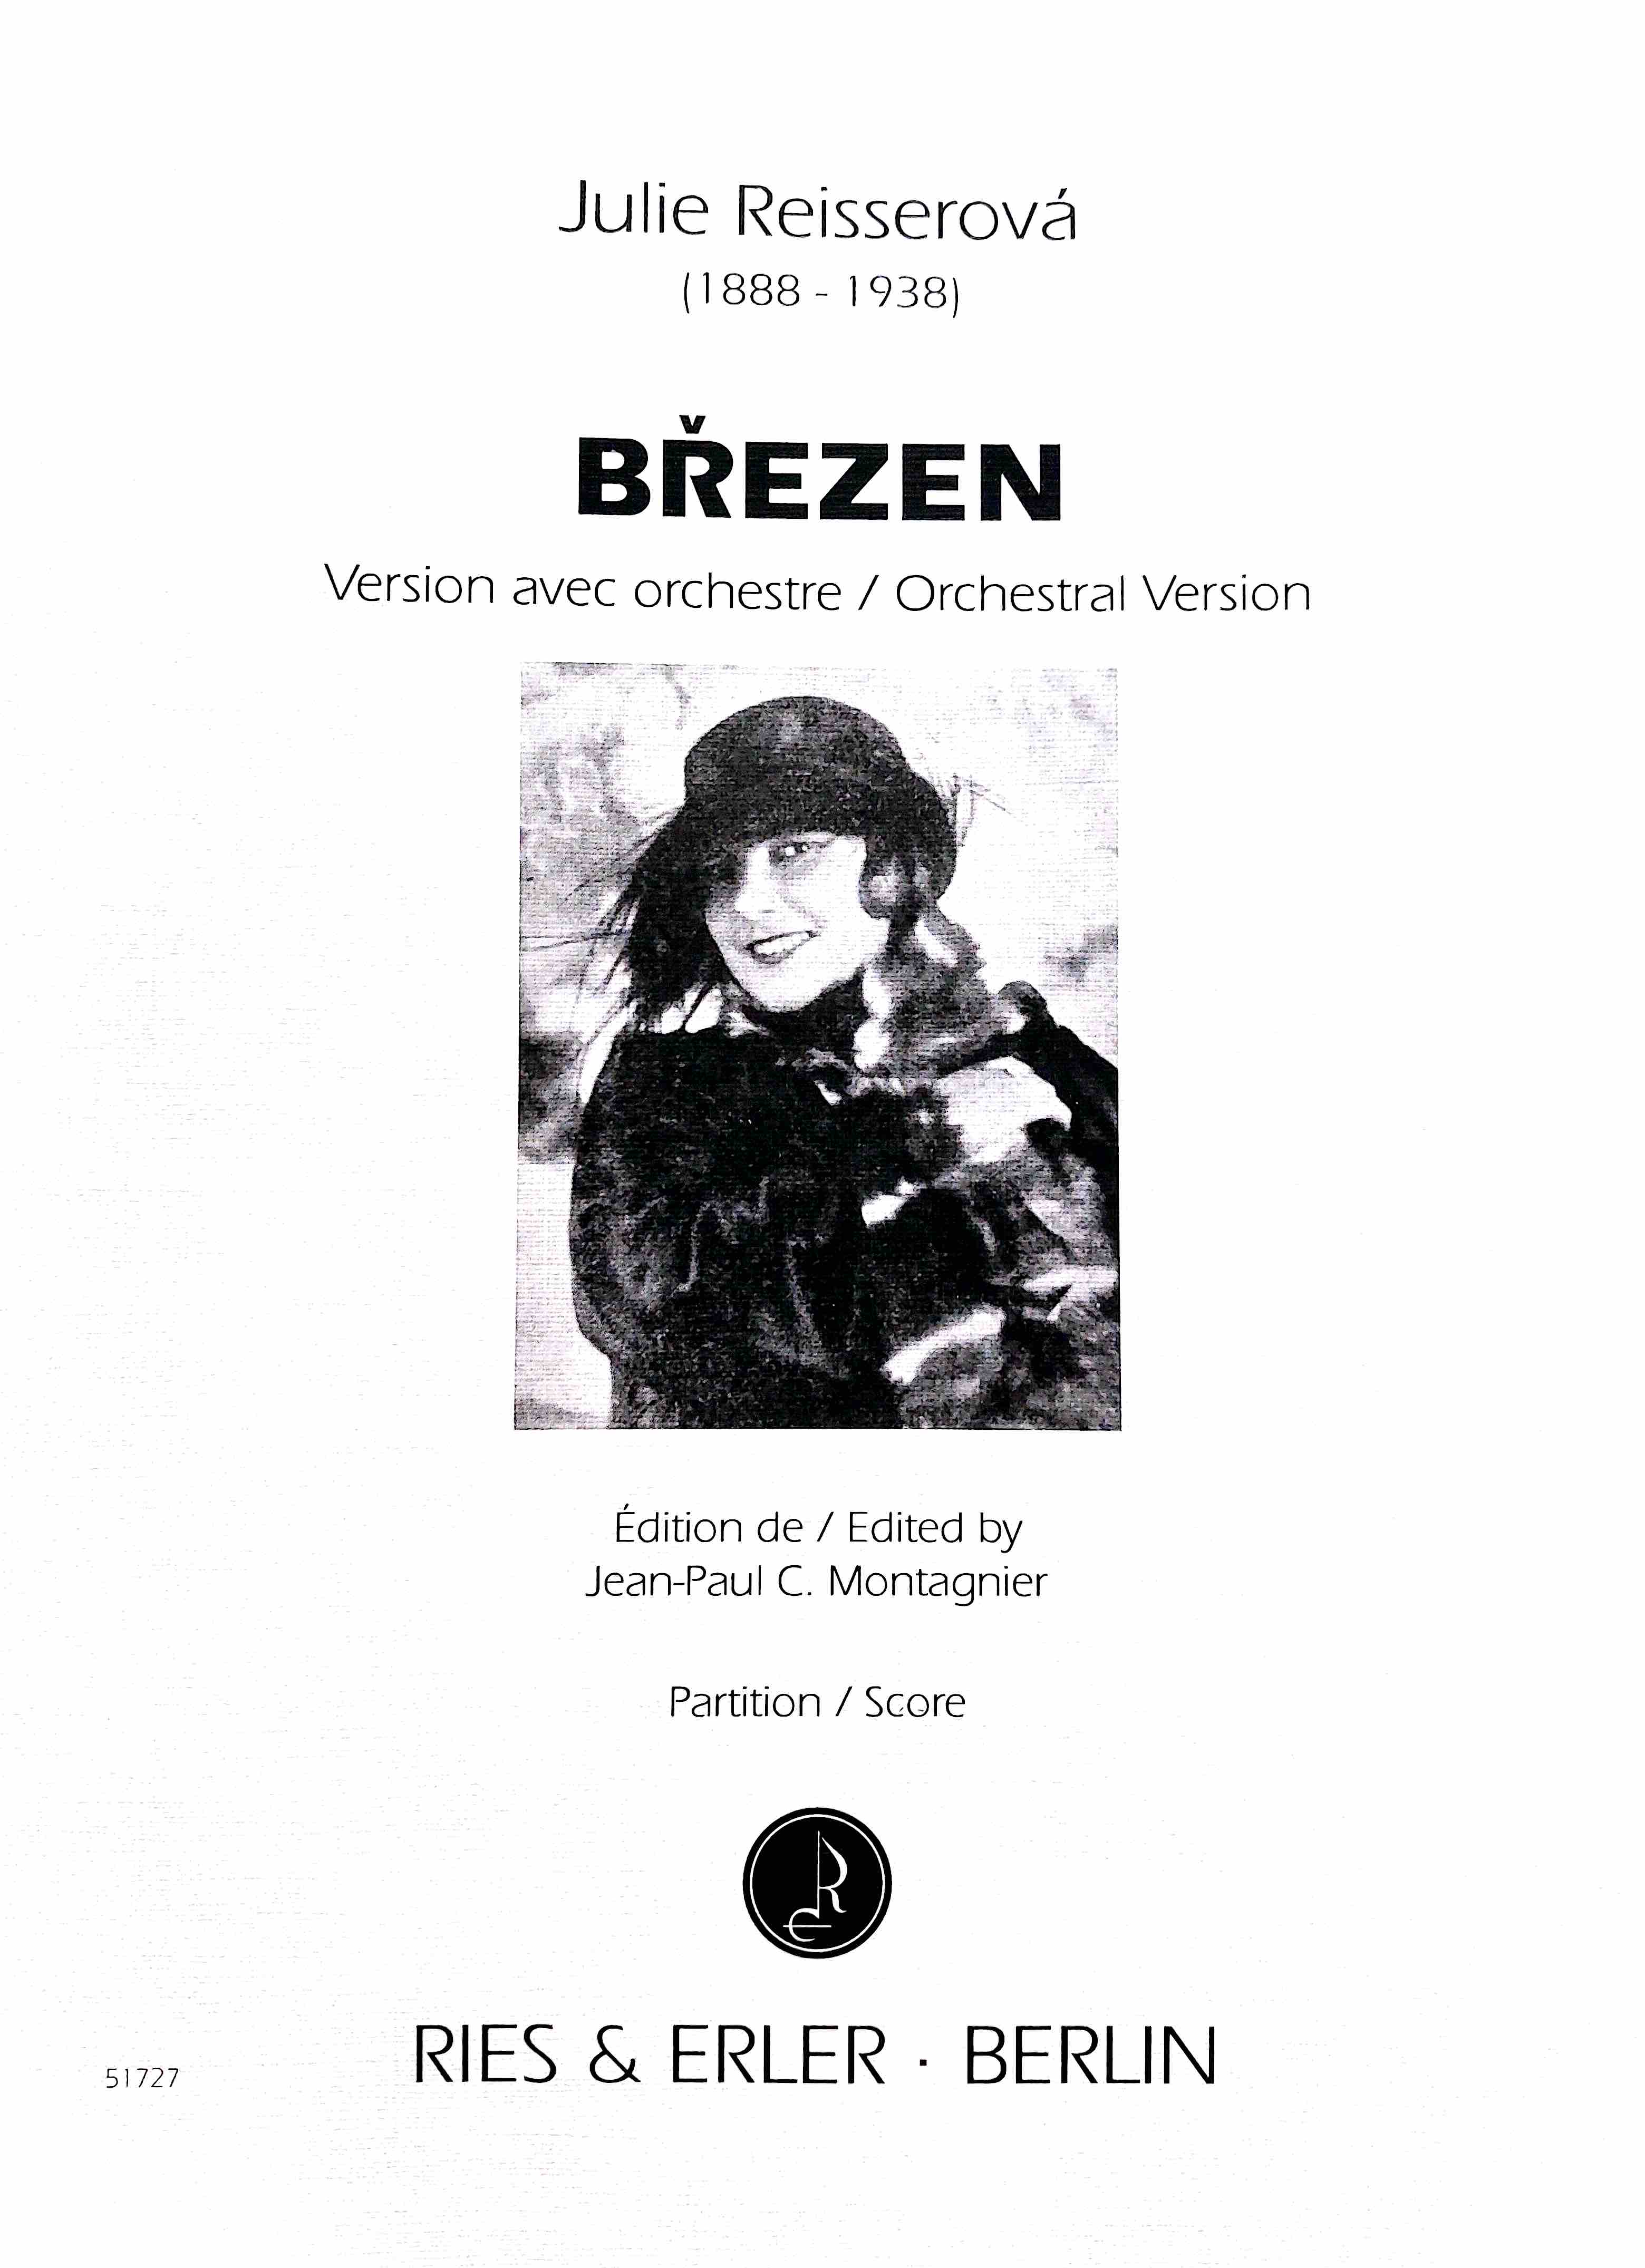 Julie Reisserová, Březen, Version avec orchestre}